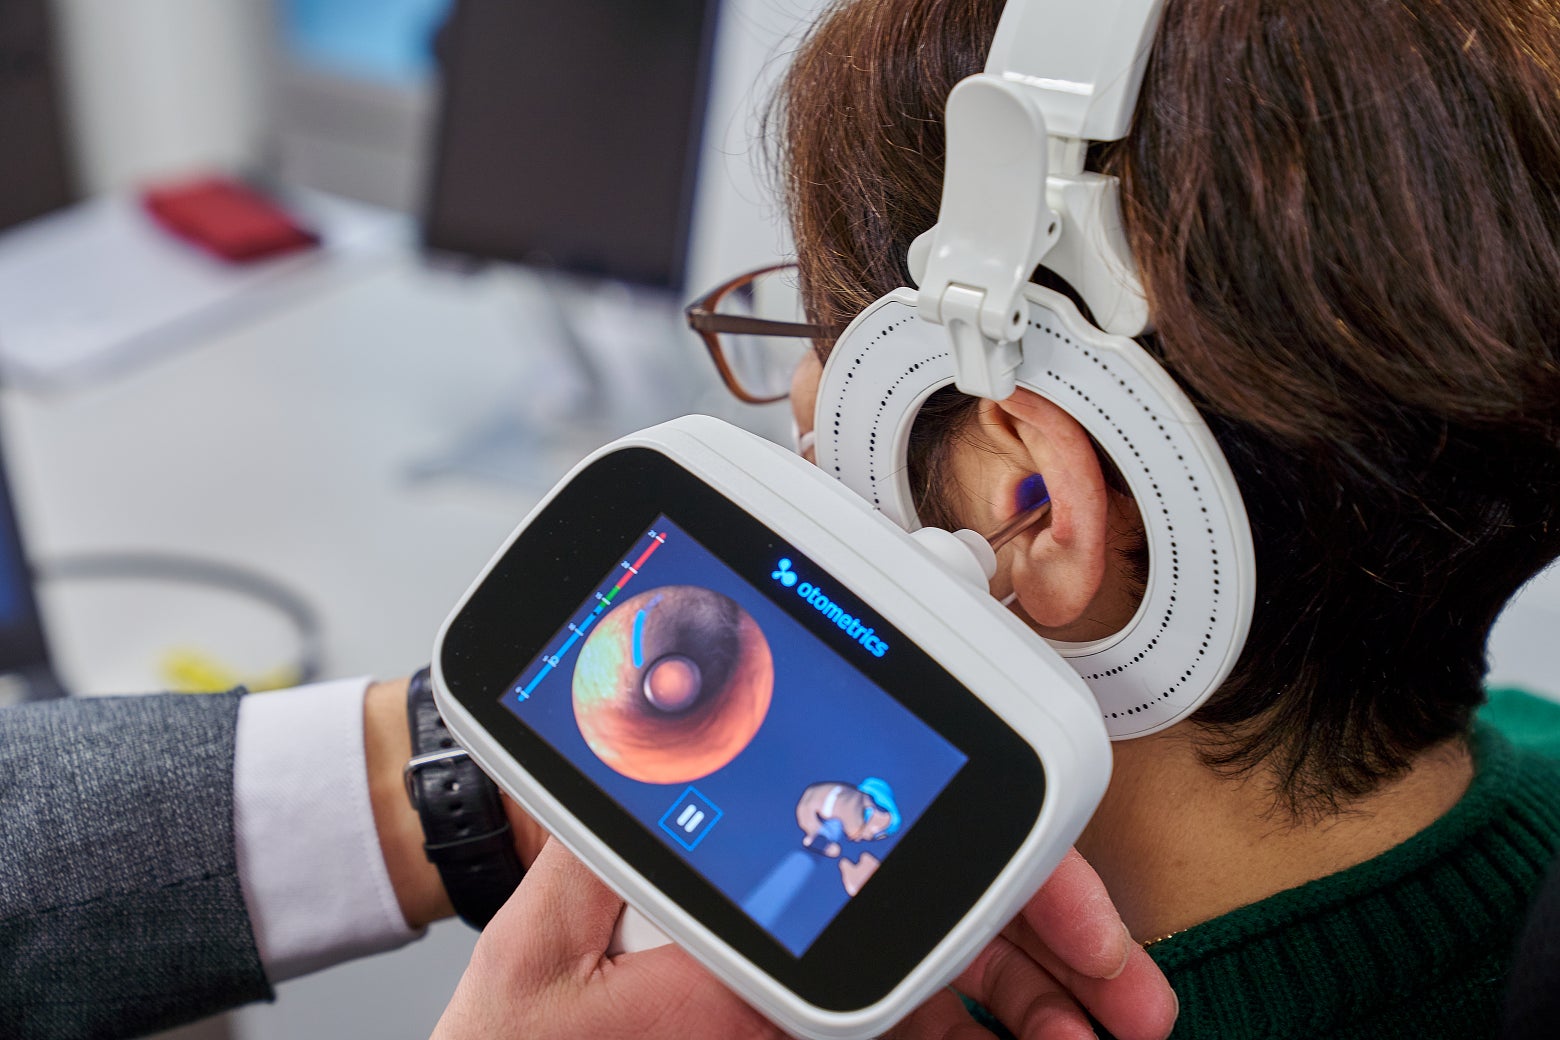 非接触時代の新常識。オーダーメイド 耳あな型補聴器作製に最新技術 「３Dスキャナー」を活用。短時間で清潔、正確な耳型採取が可能に。